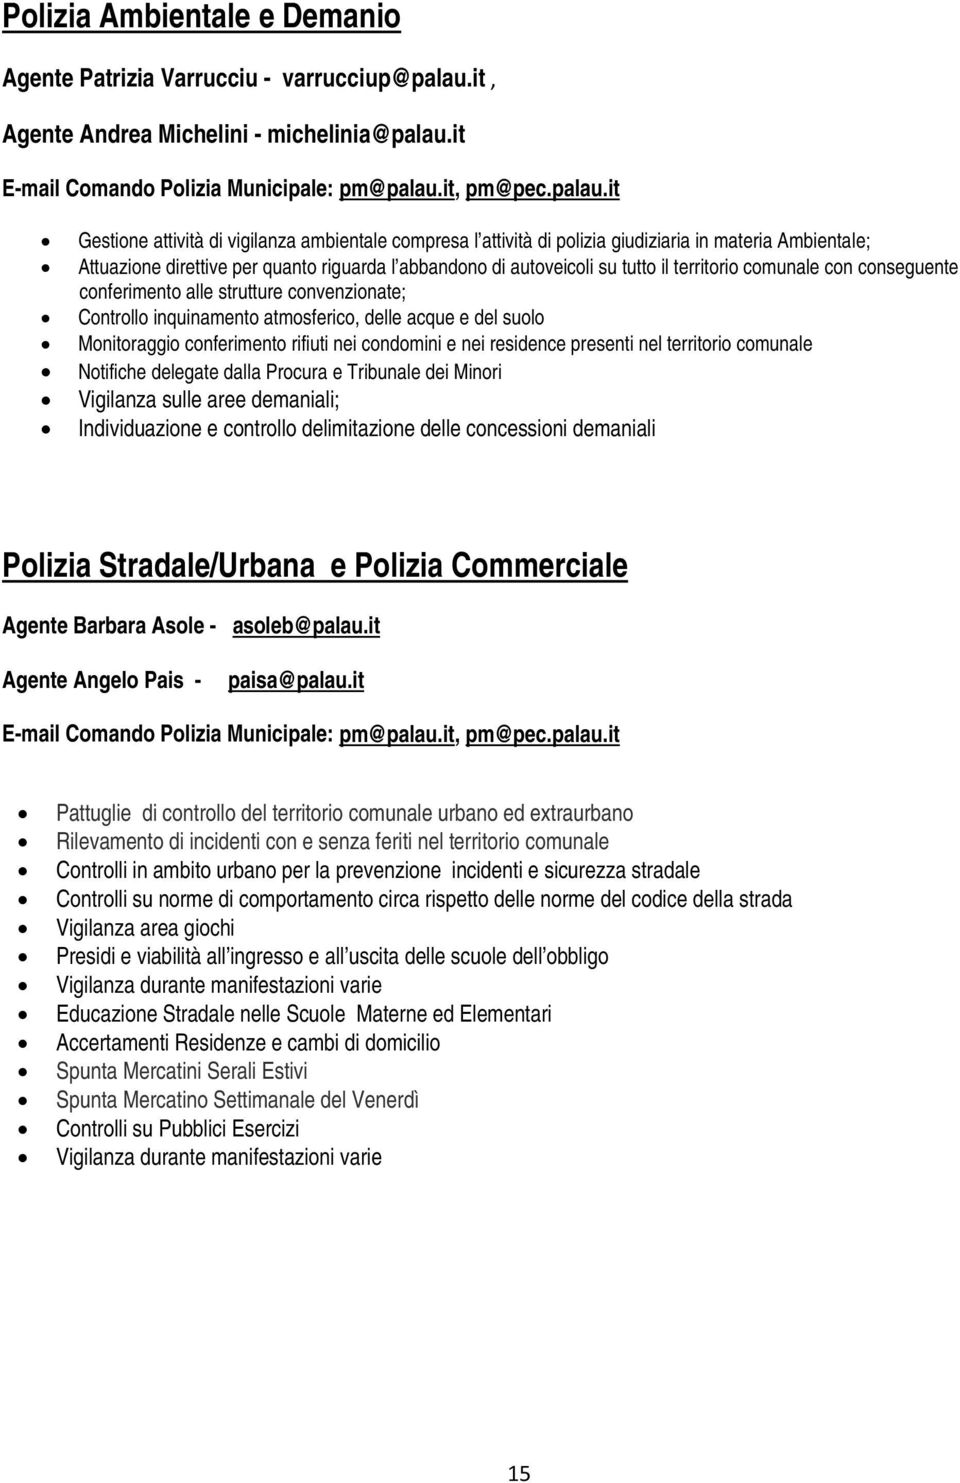 it E-mail Comando Polizia Municipale: pm@palau.